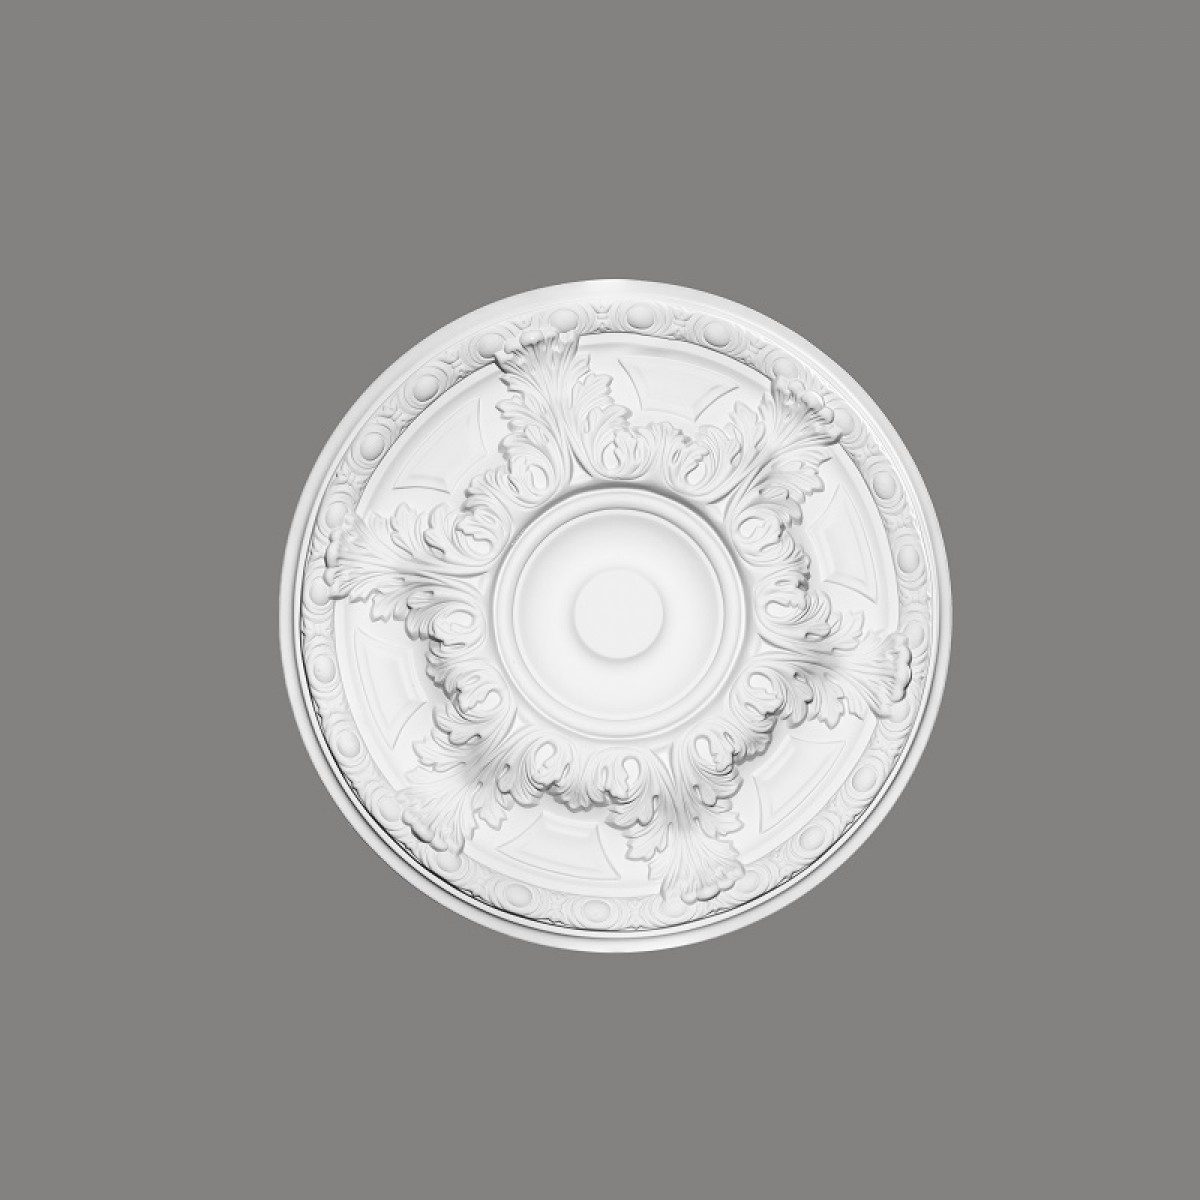 Rozeta decorativa B3033, Dimensiuni: Diam. 49.2 cm (H: 5.4 cm), Mardom Decor, Rozete decorative 